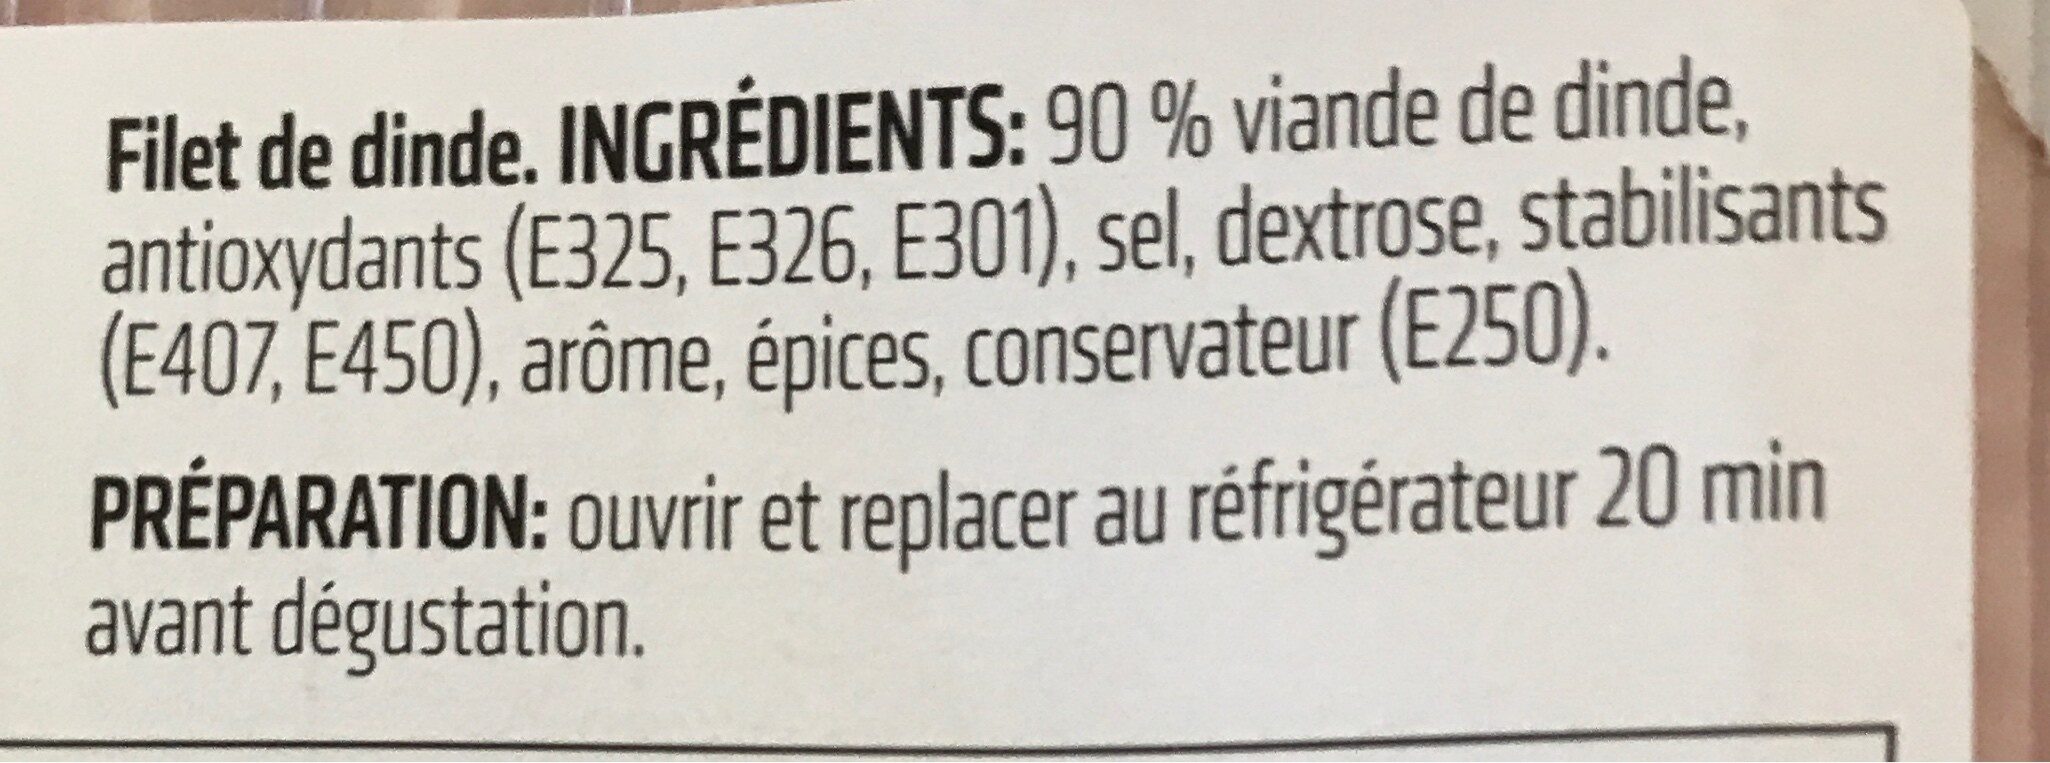 Filet de dinde - Ingrediënten - fr